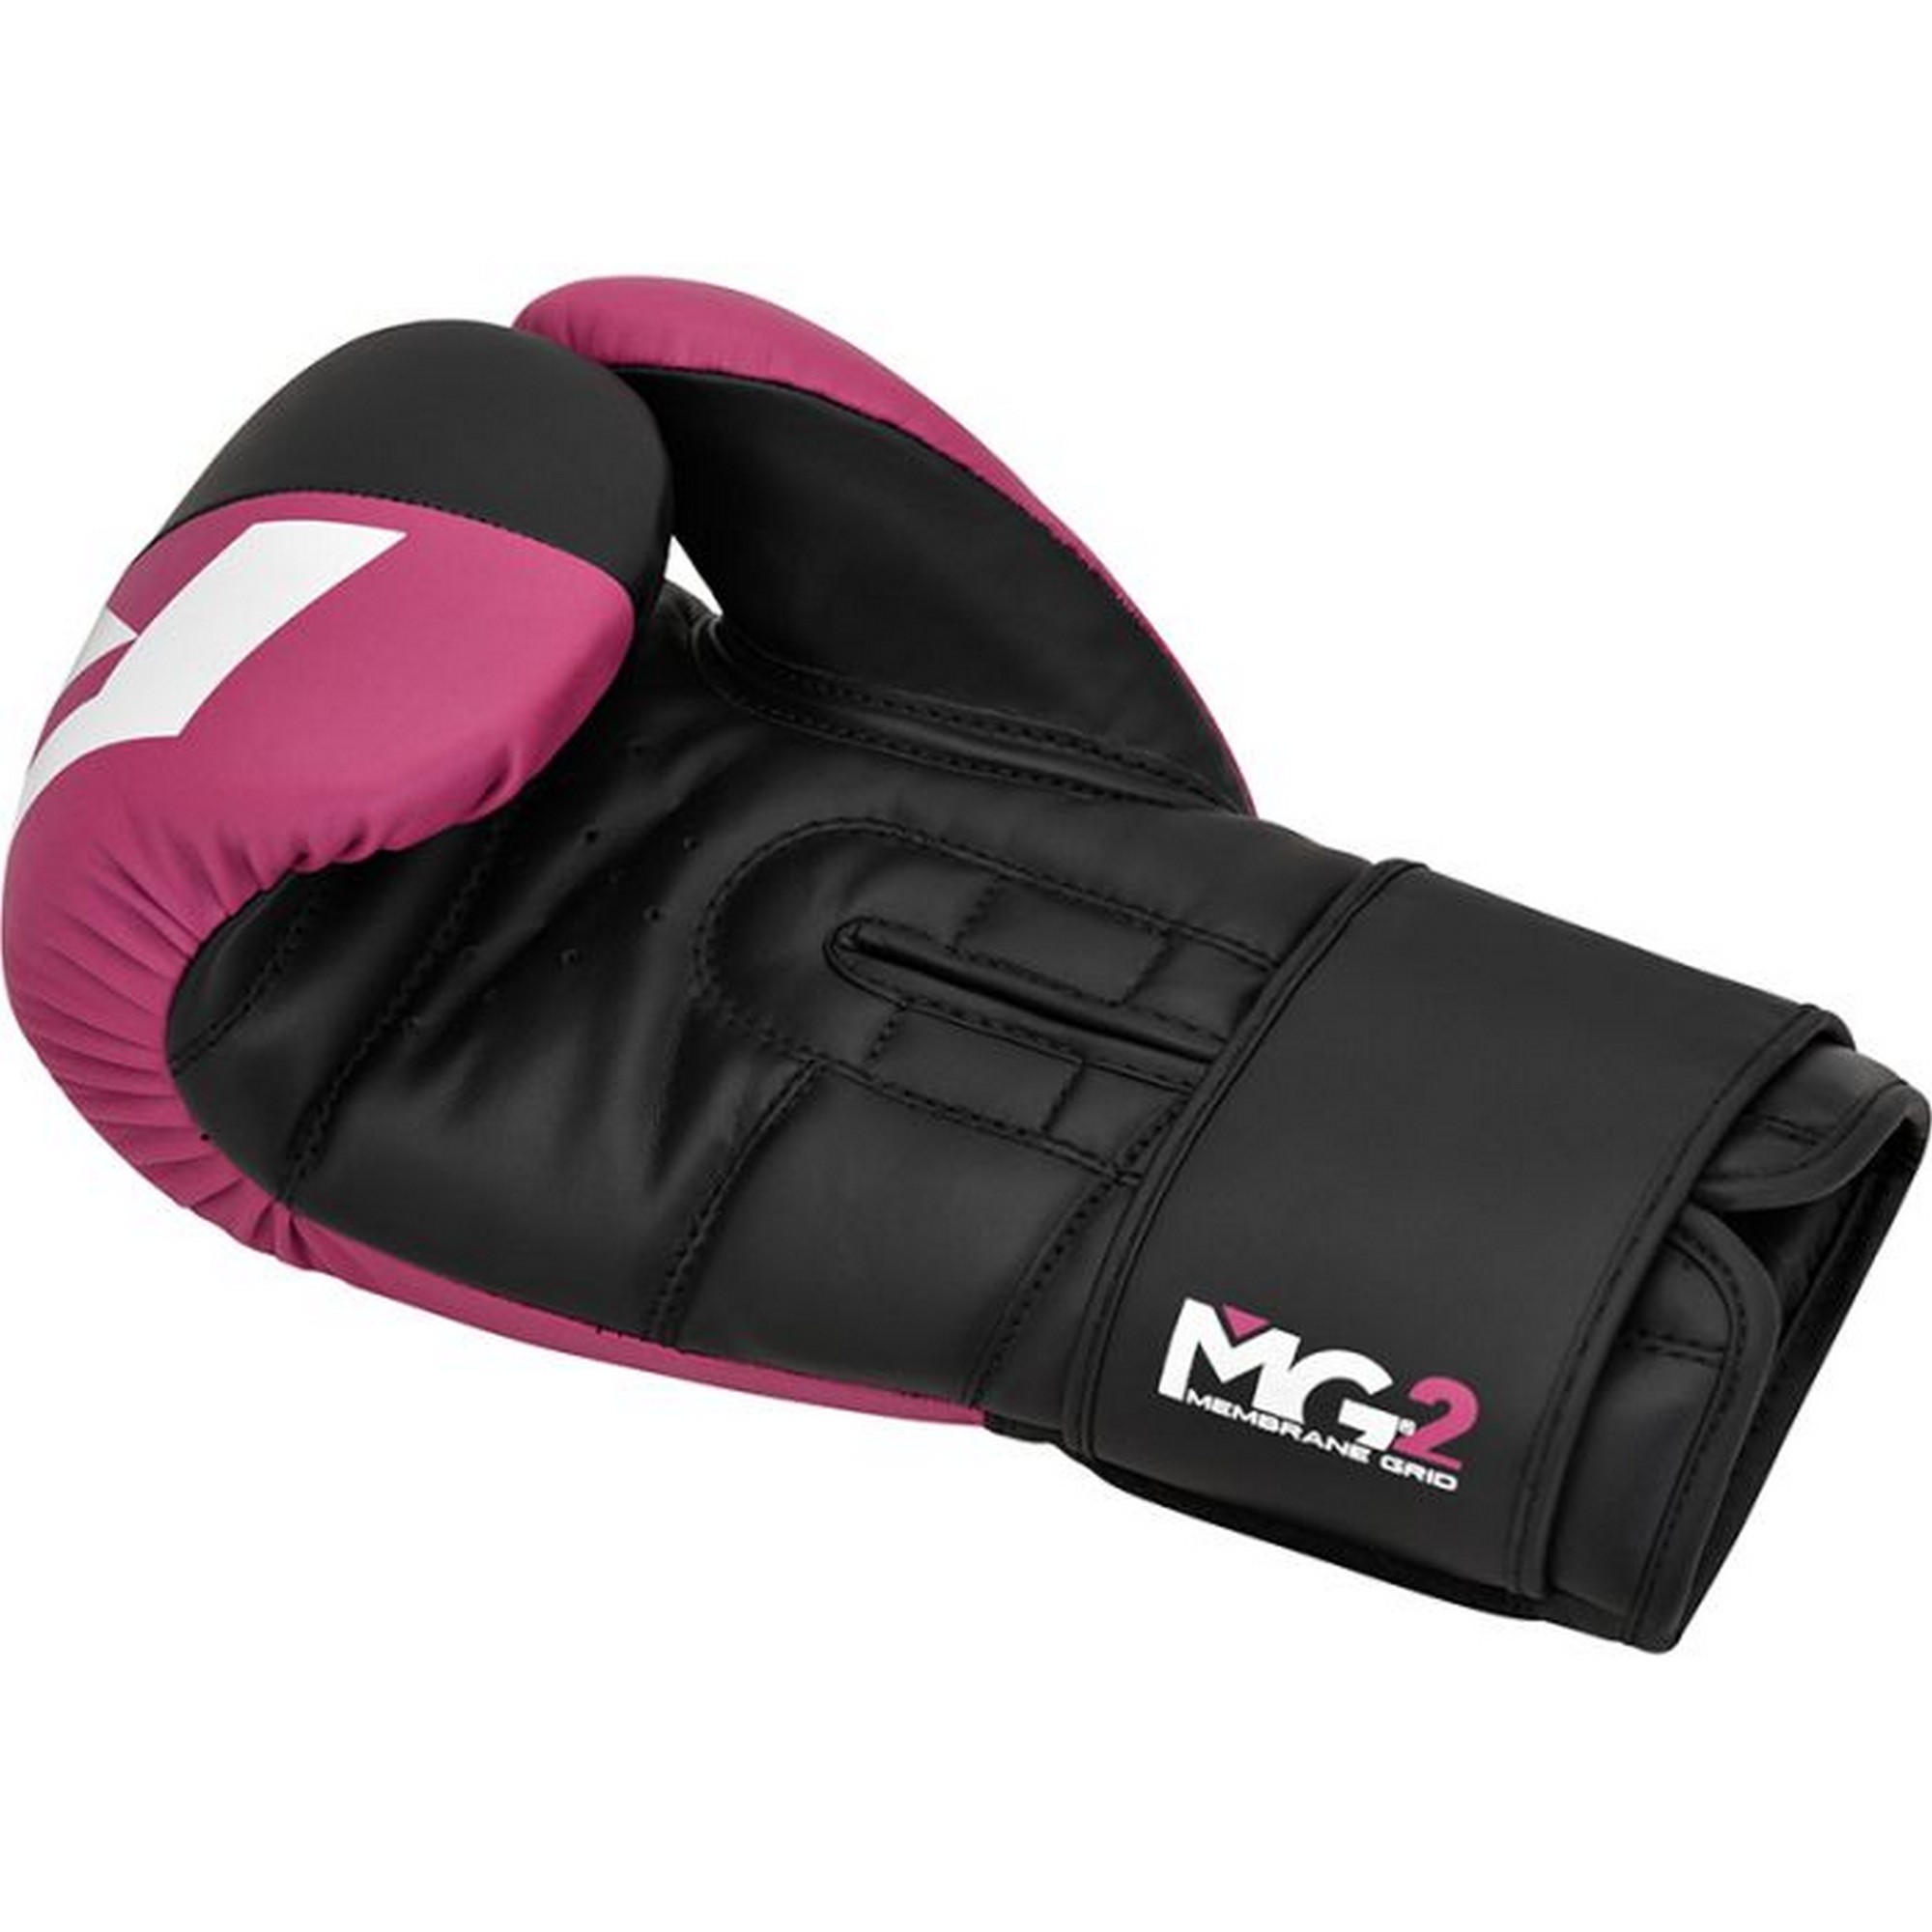 Перчатки тренировочные RDX BGR-F4P-10oz розовый\черный 2000_2000